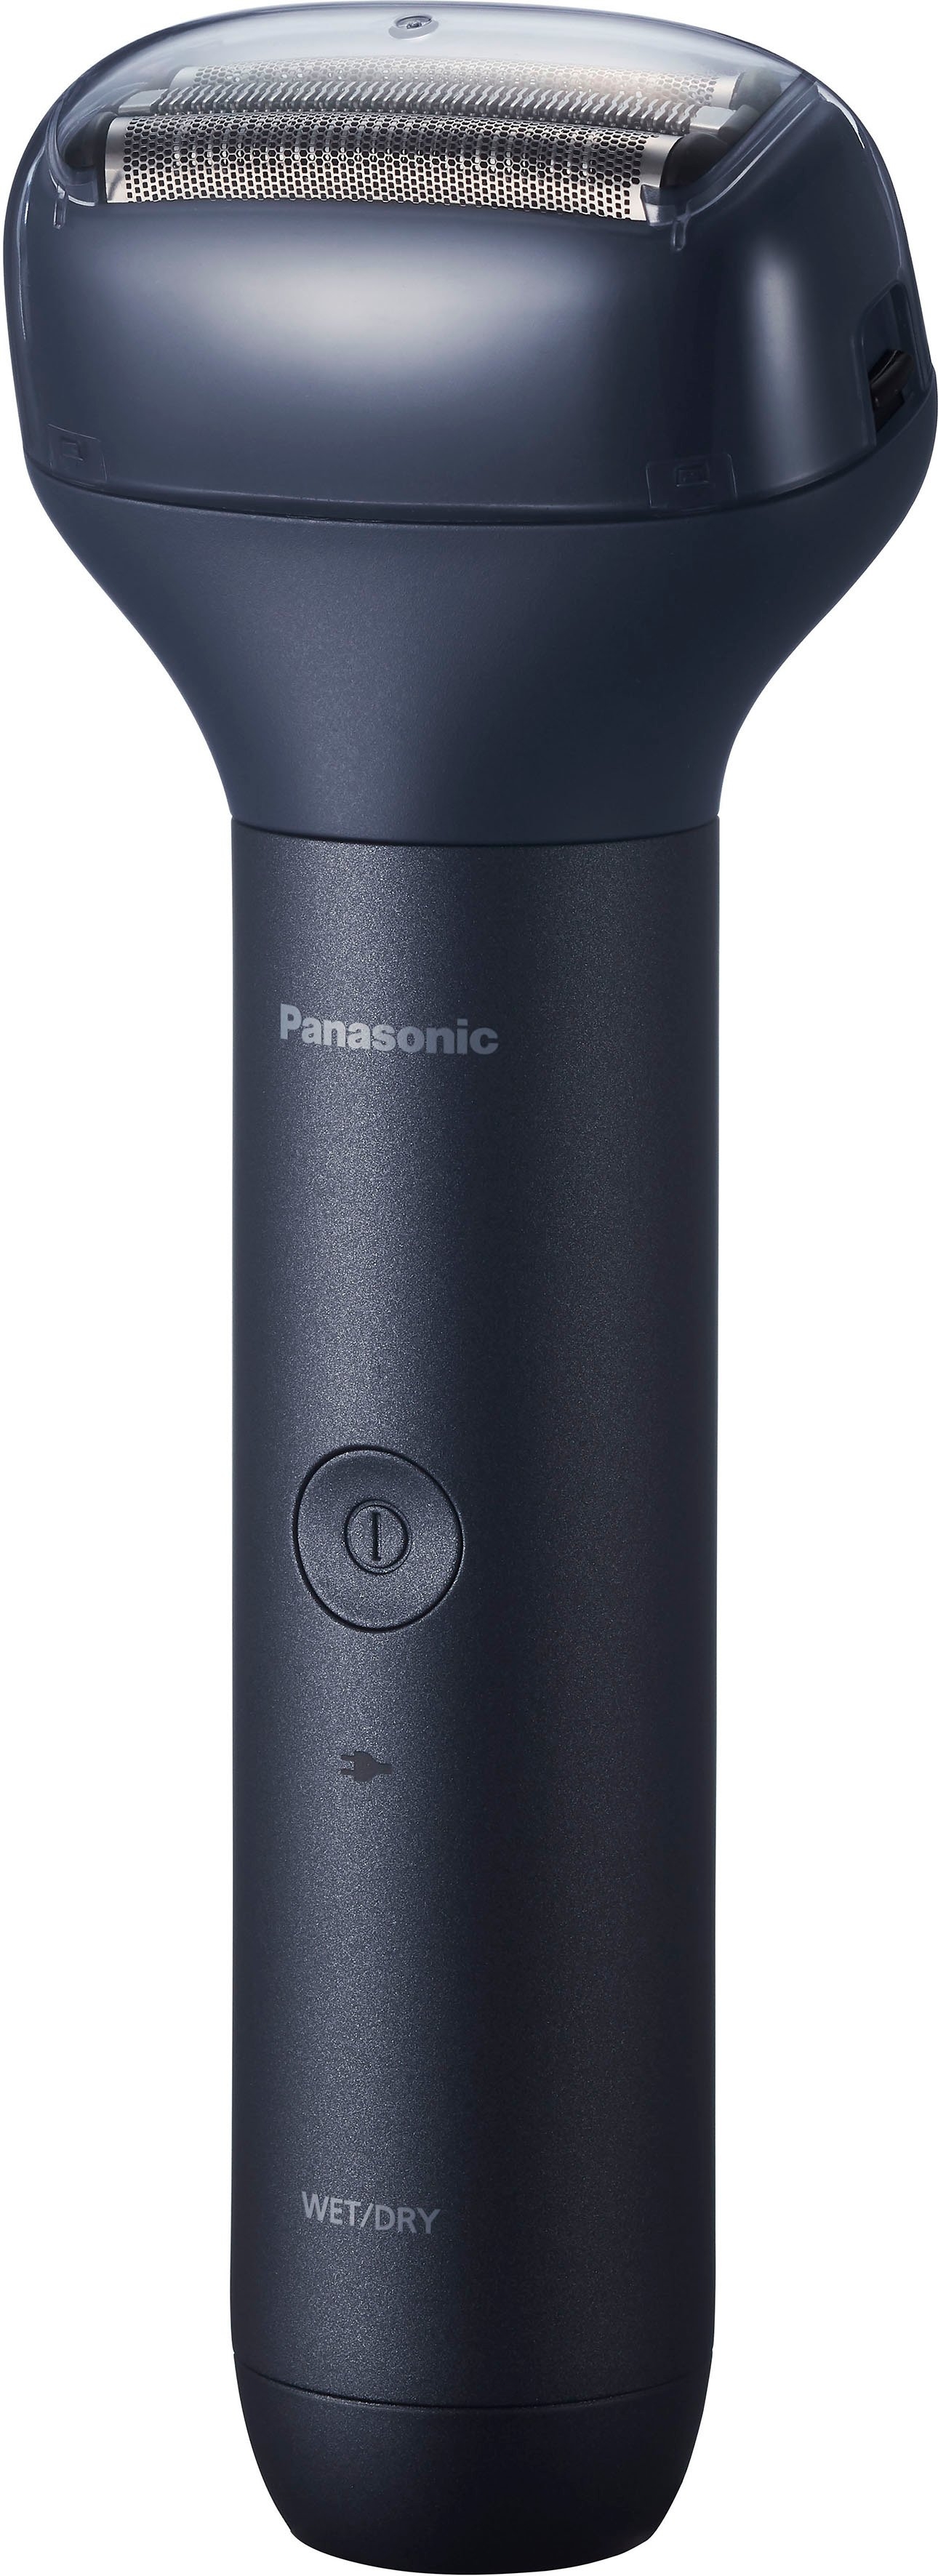 Coöperatie De databank salami Panasonic Scheerkop Multishape 3-lemmeten-scheerkop snel online gekocht |  OTTO